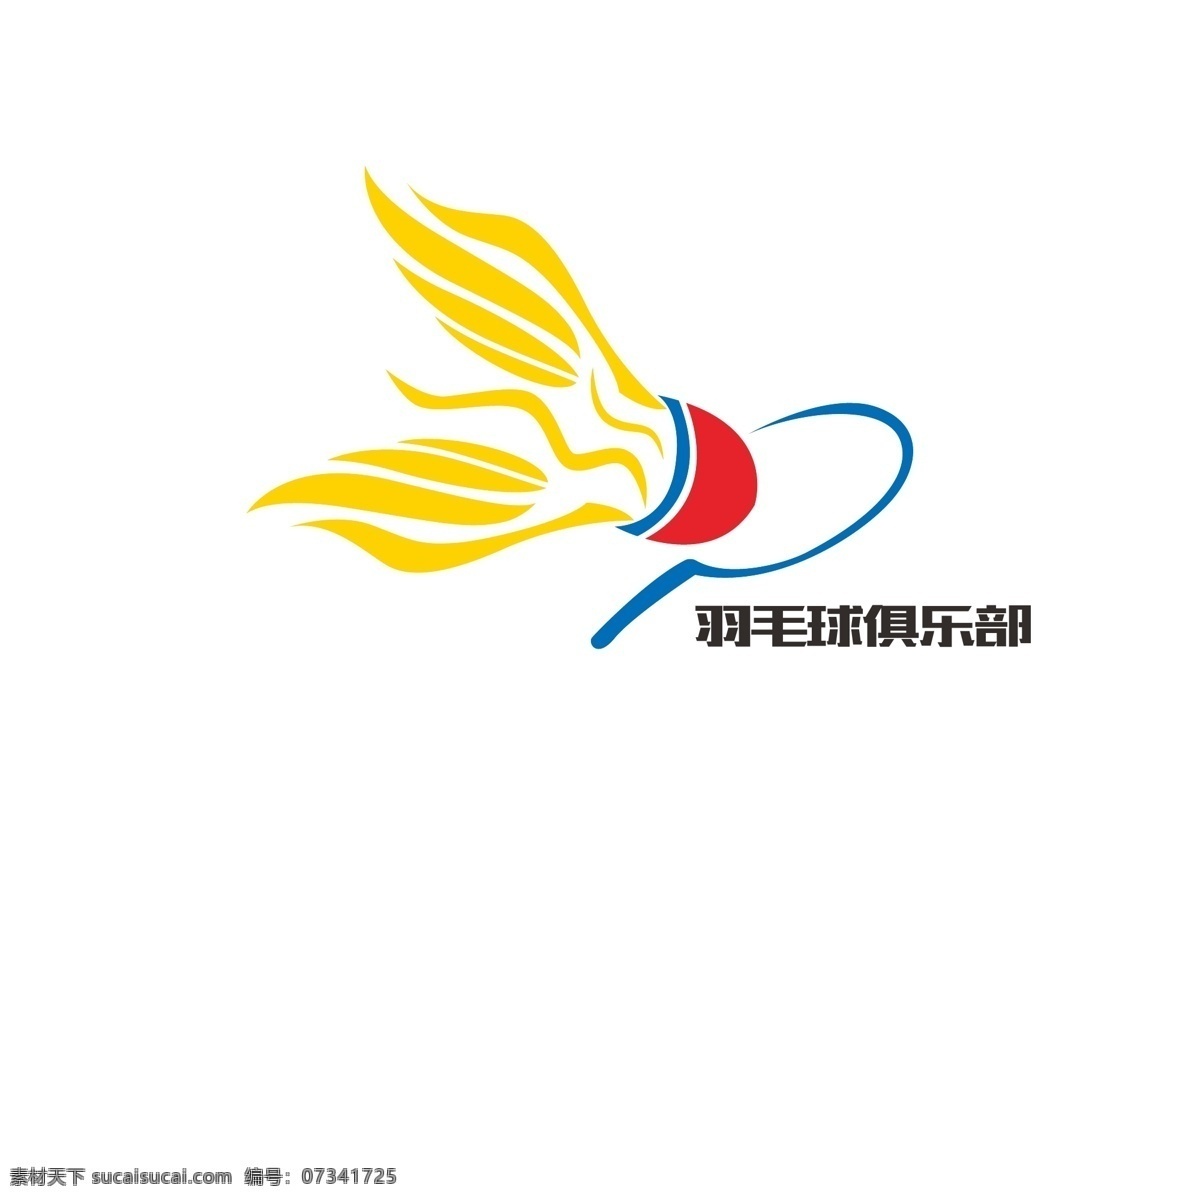 羽毛球俱乐部 羽毛球 logo 俱乐部 标志图标 企业 标志